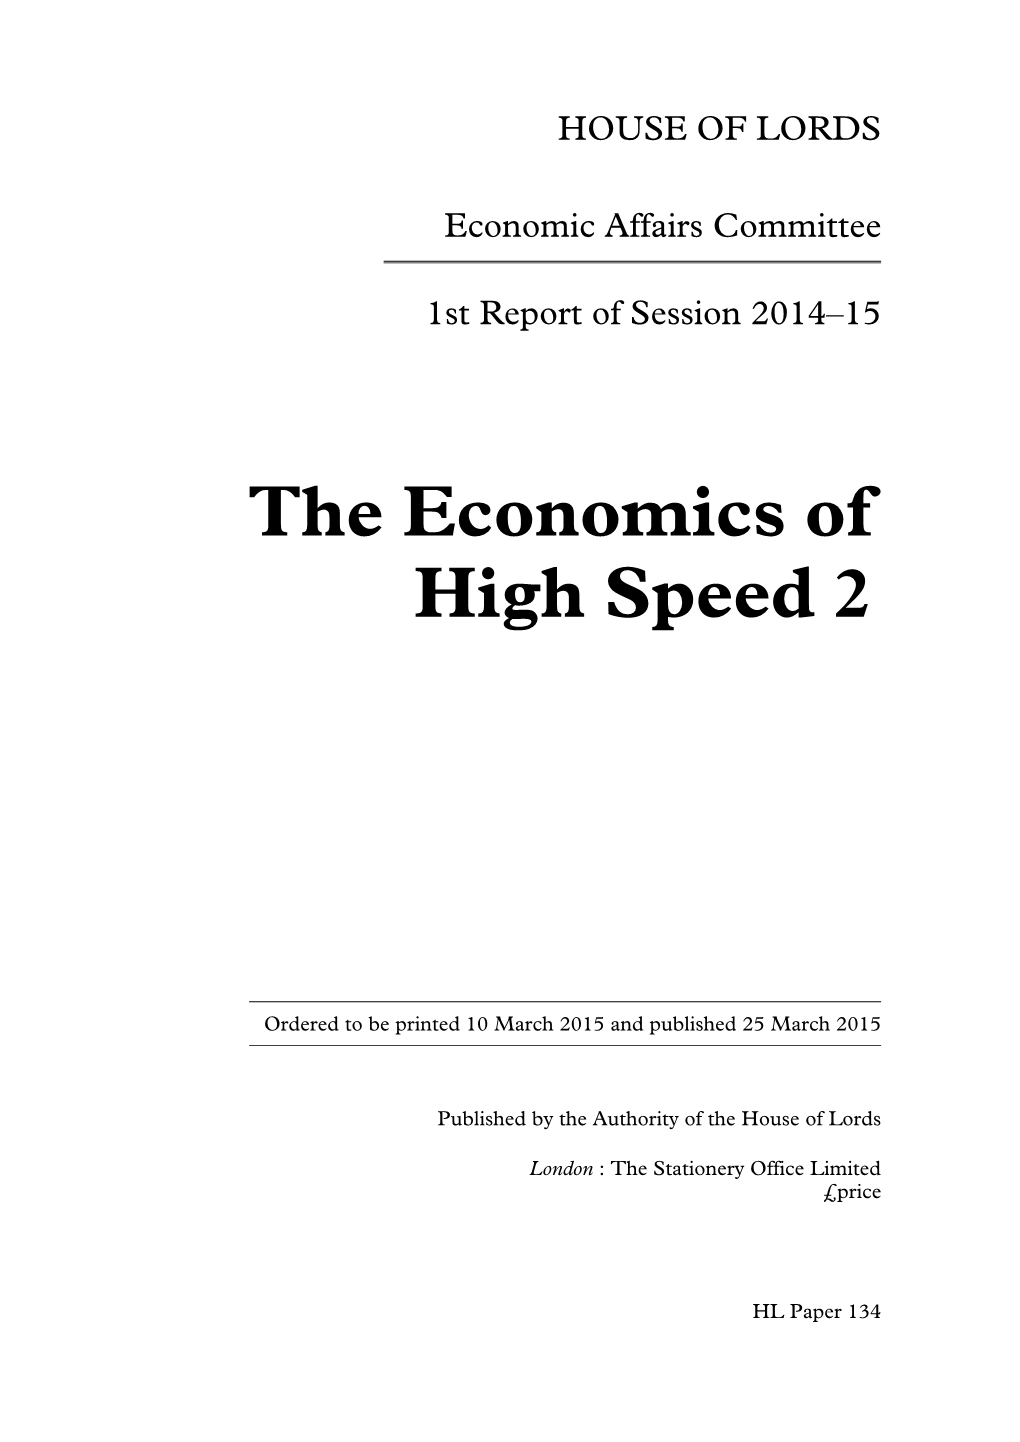 The Economics of High Speed 2